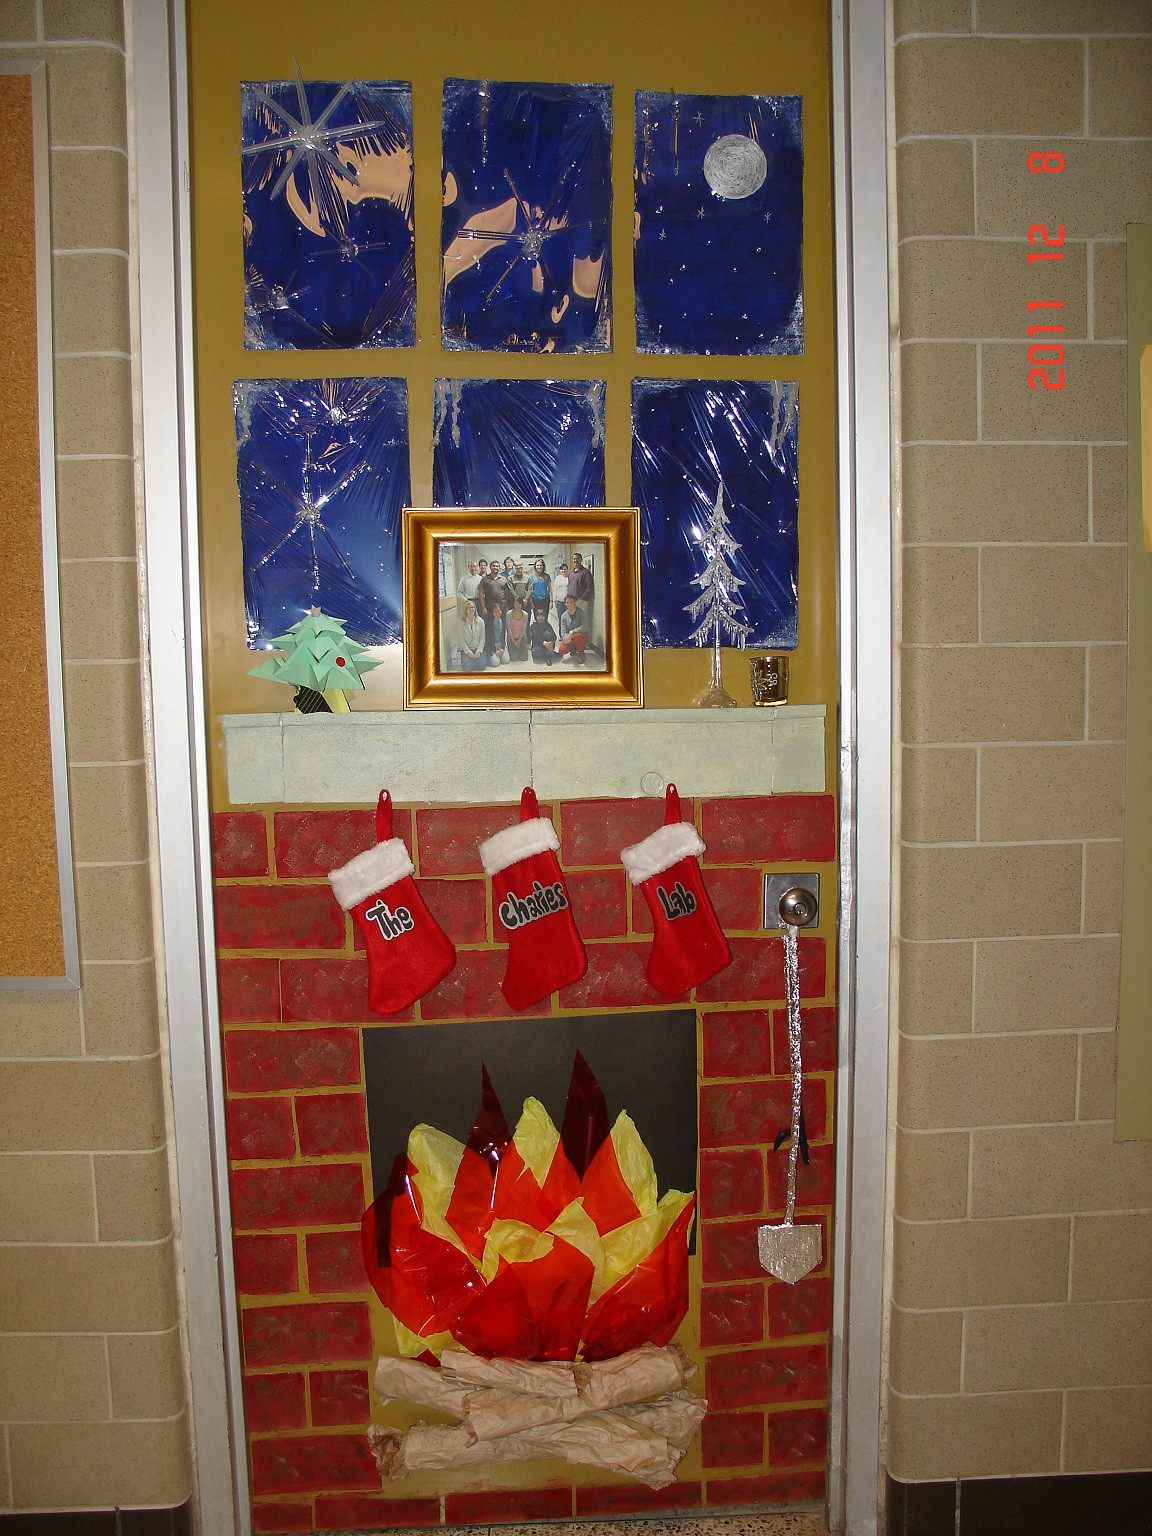 Christmas Door Decoration Ideas
 UW Biology Graduate Student Association Christmas door